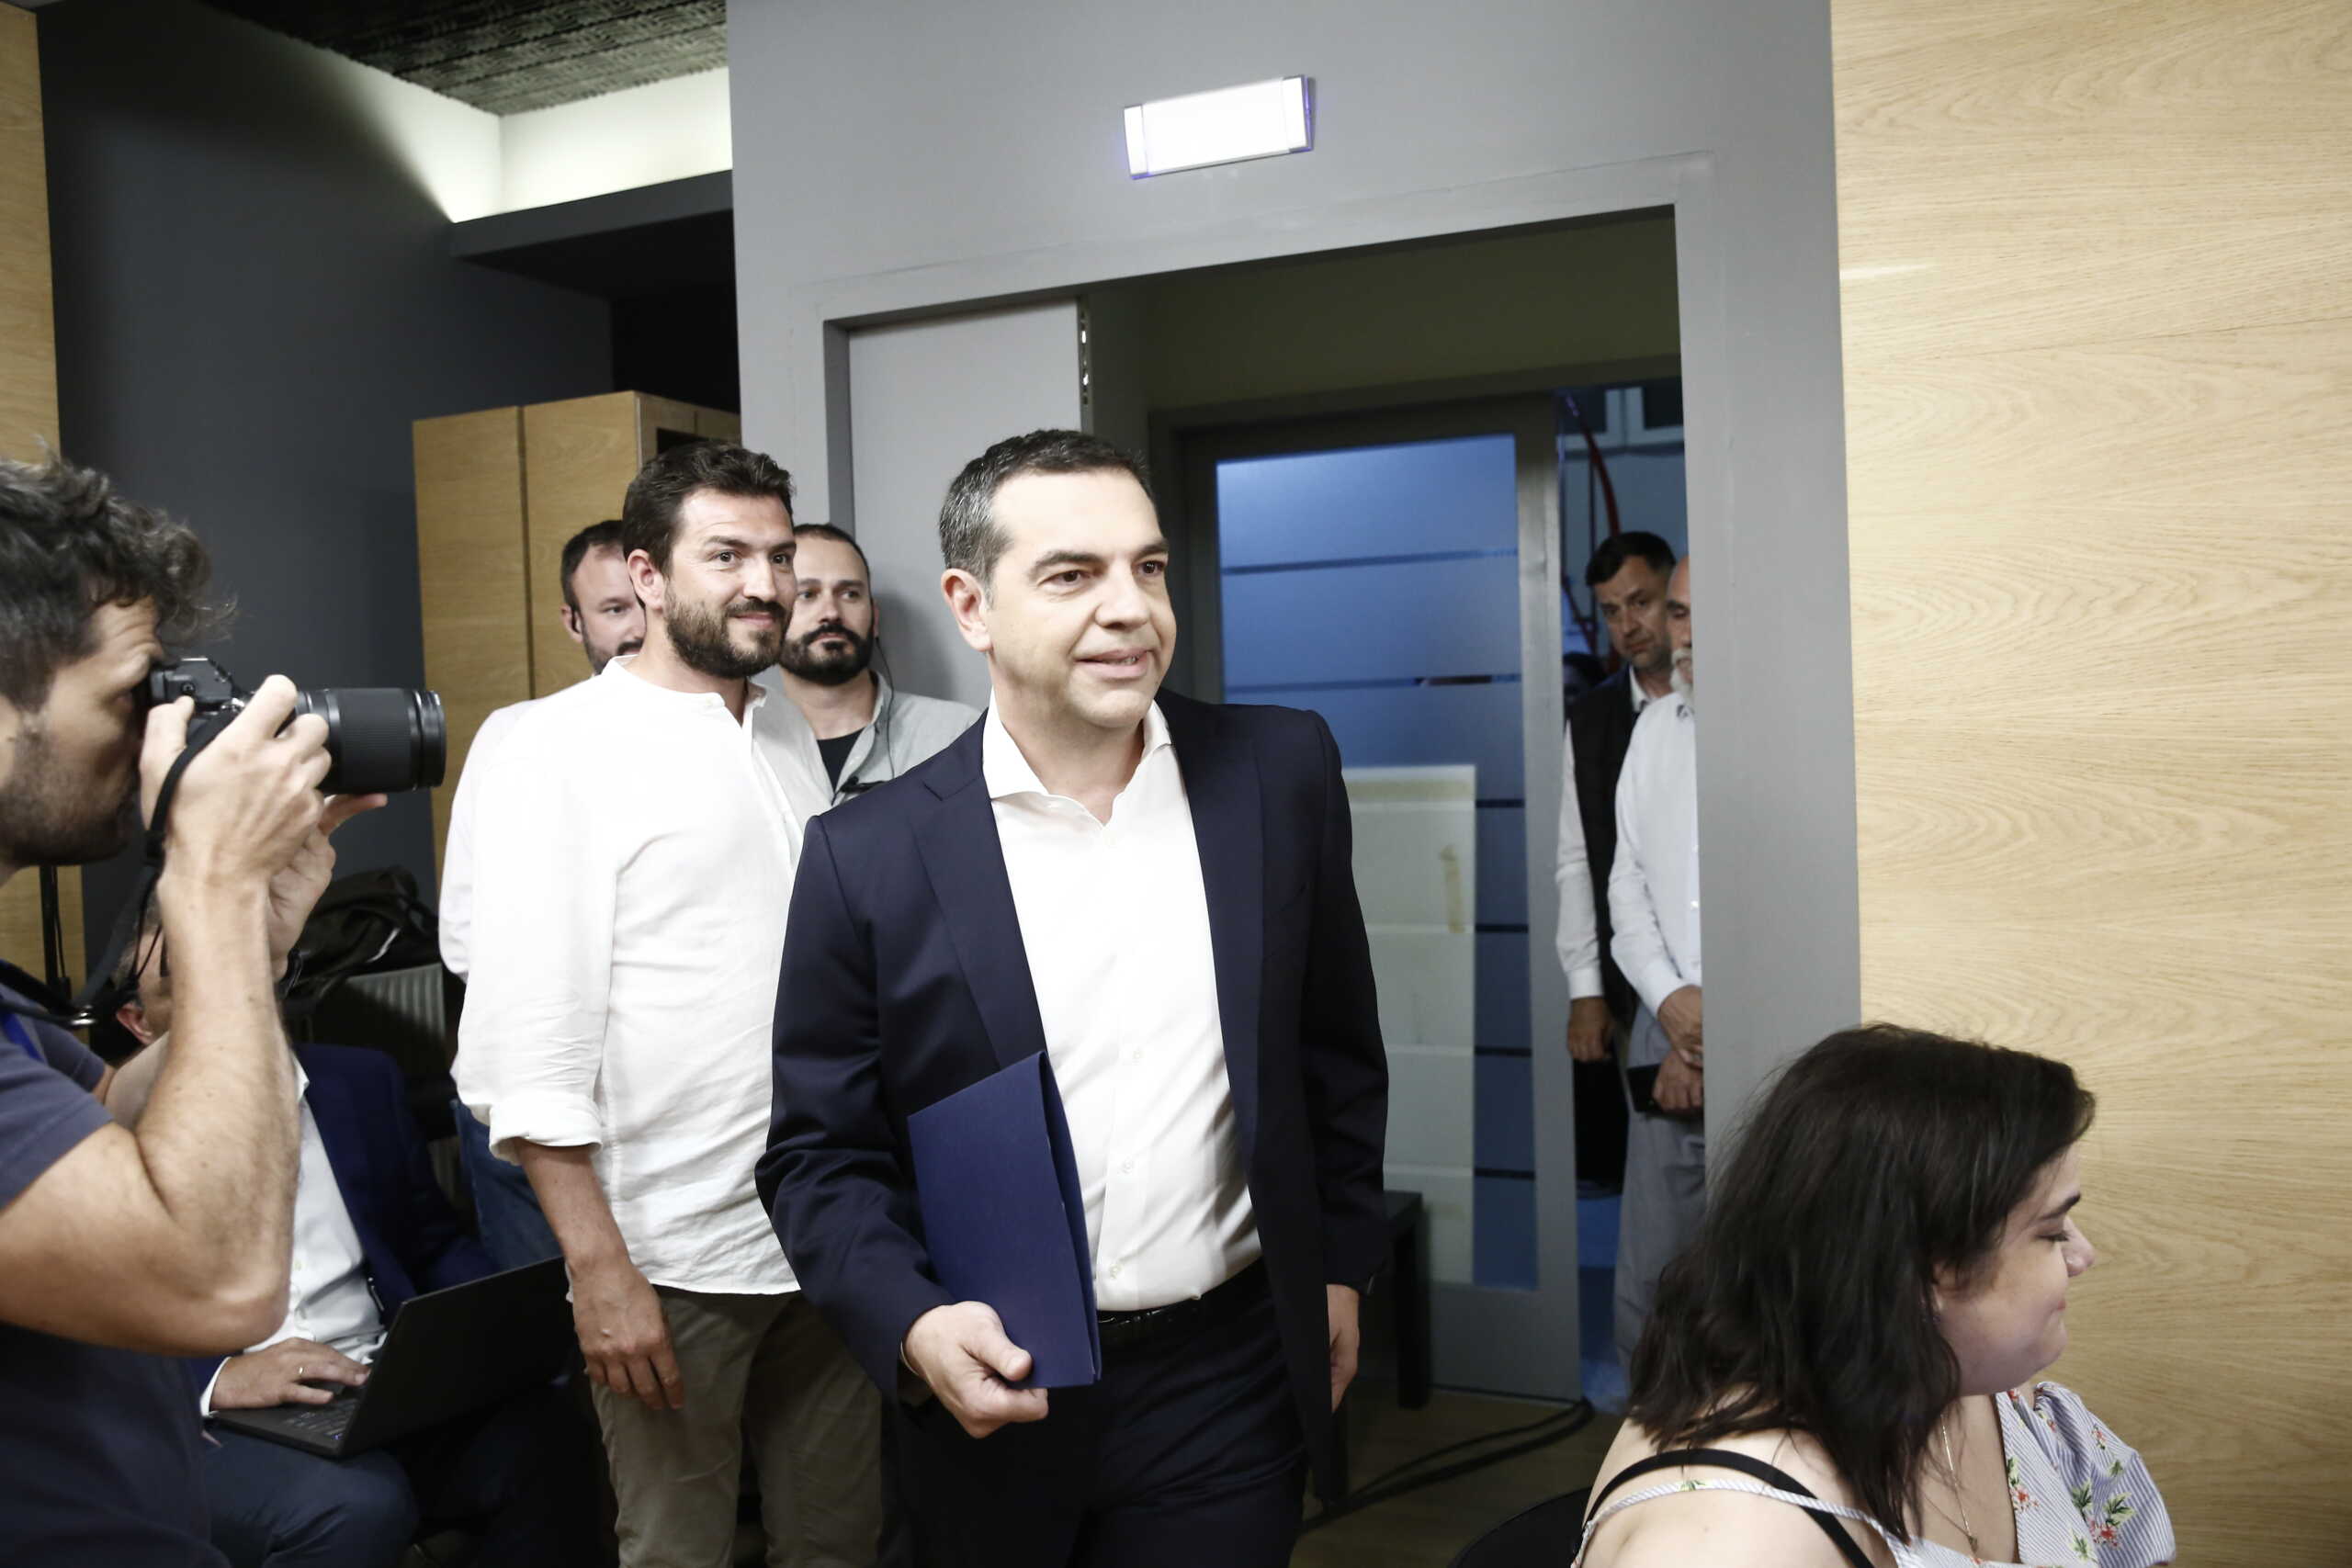 ΣΥΡΙΖΑ: Ενώπιος ενωπίω μετά τη βαριά ήττα – Συνεδριάζει το Εκτελεστικό Γραφείο, ανοίγει τα χαρτιά του ο Τσίπρας